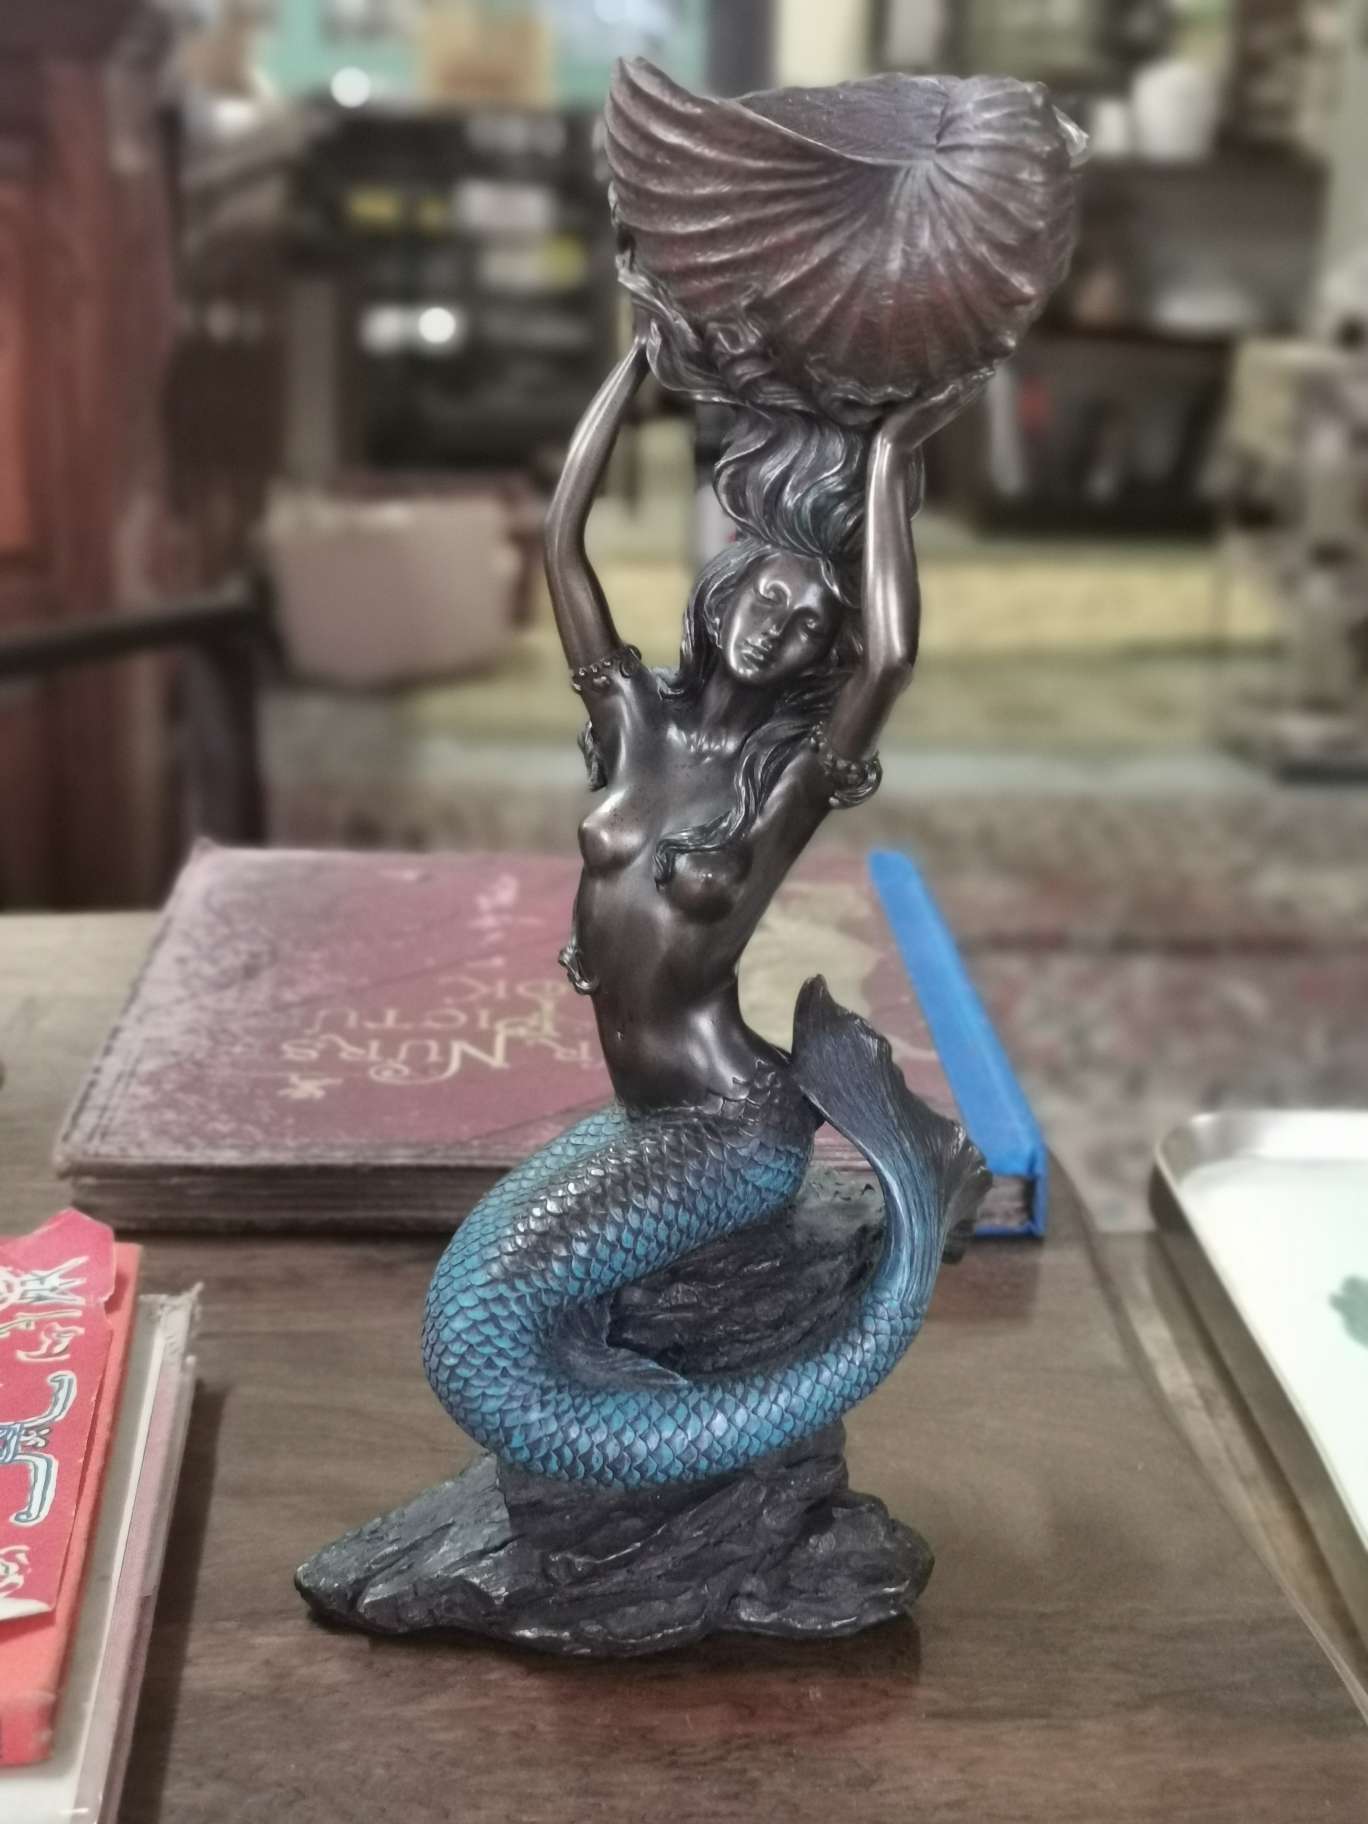 Mermaid figurine